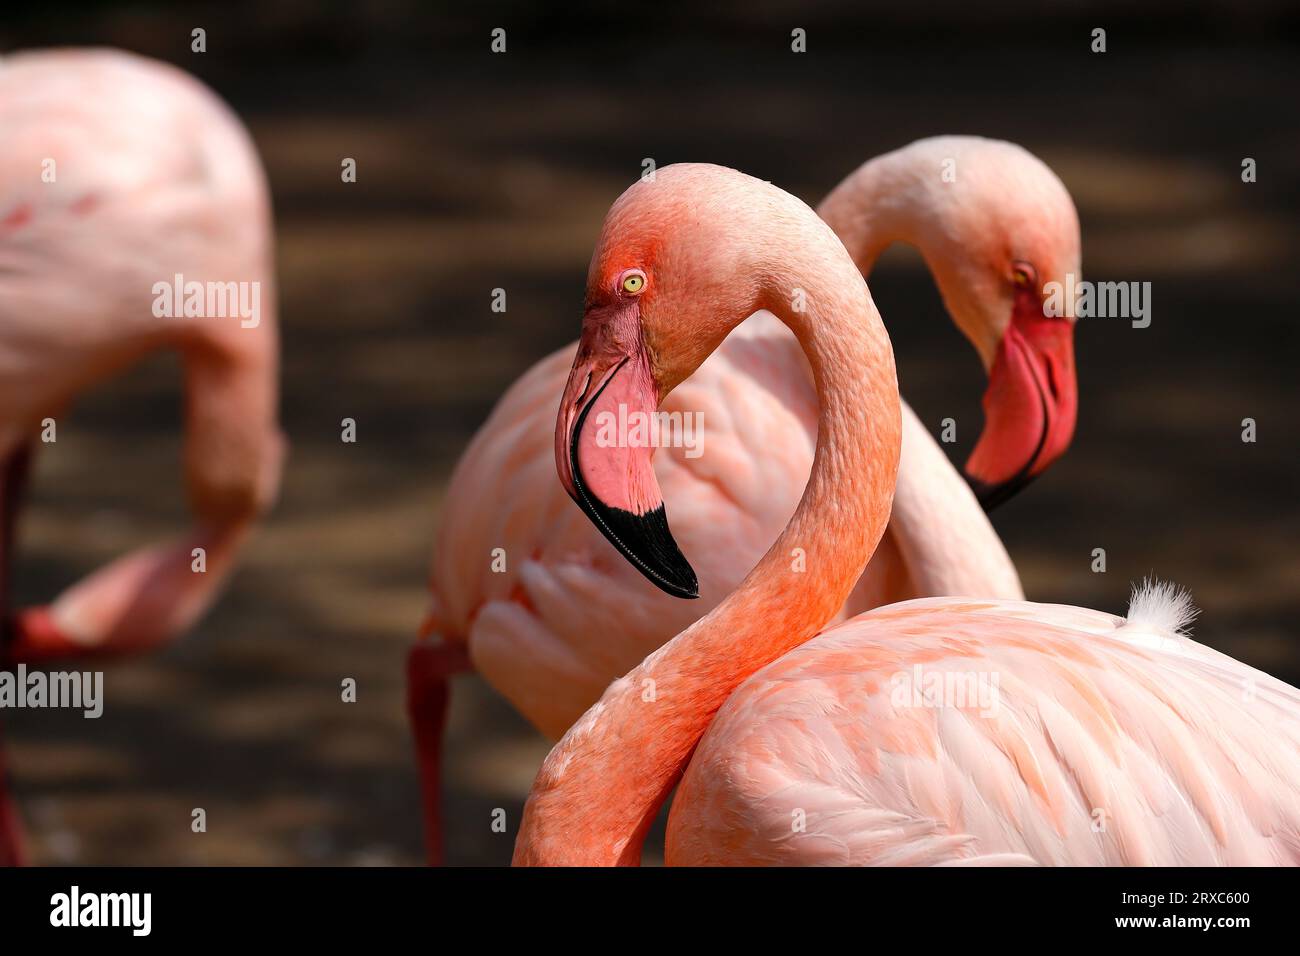 Nahaufnahme des rosafarbenen Flamingo-Wasservogels im Fluss, Hals- und Kopfdetail. Fotografie von lebendiger Natur und Tierwelt. Stockfoto